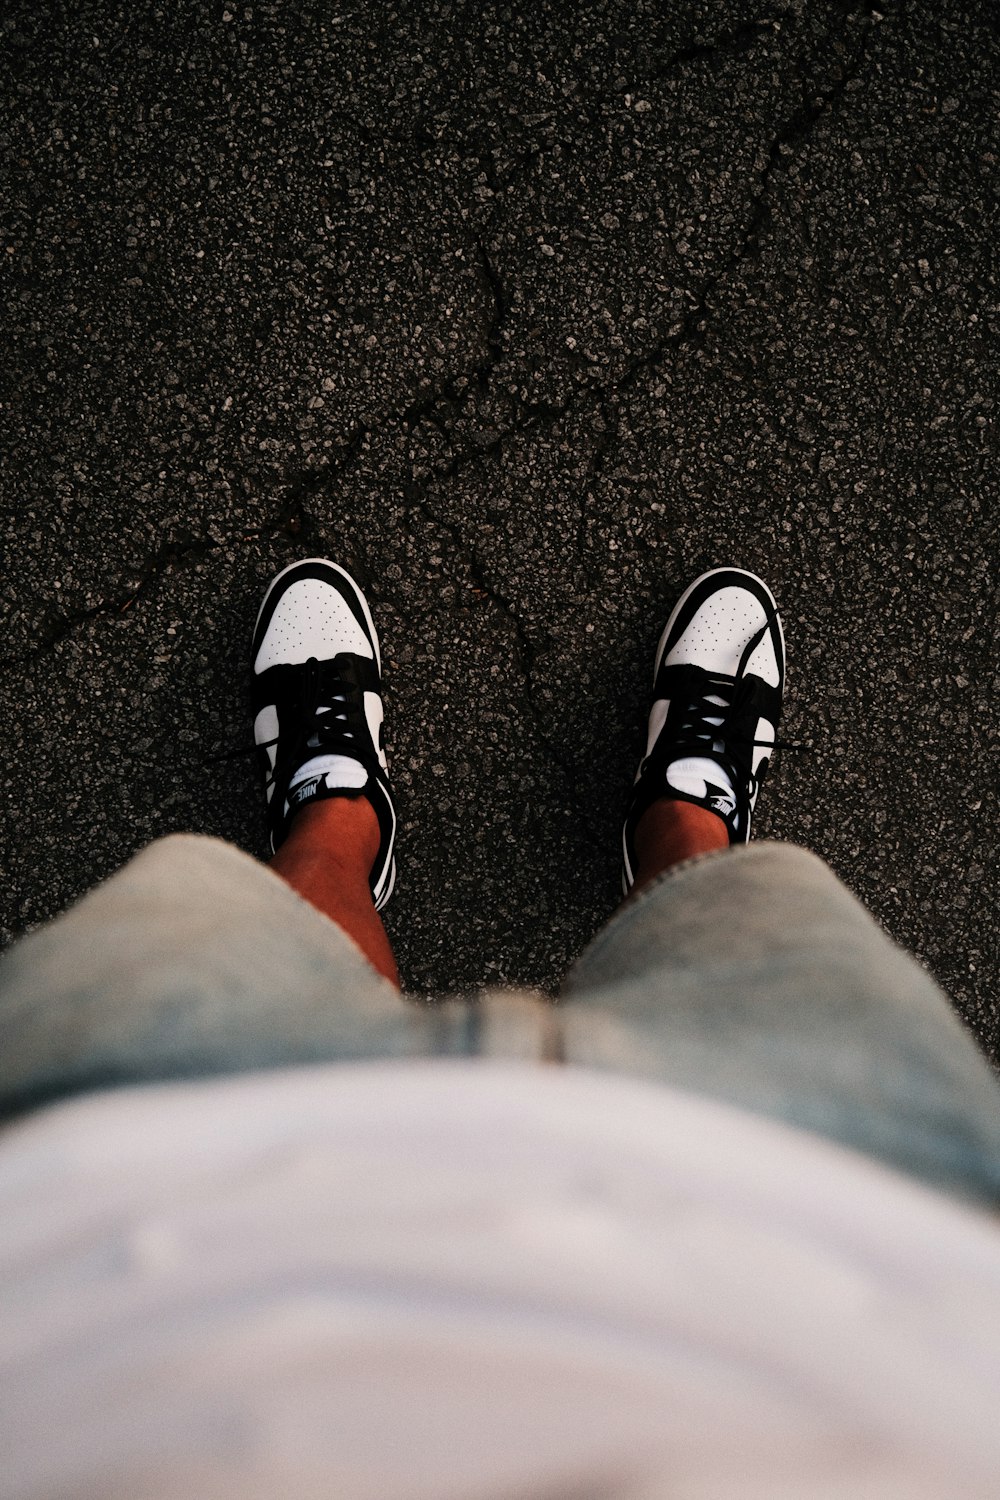 Foto Una persona con zapatos blancos y negros de pie sobre el asfalto –  Imagen Zapato gratis en Unsplash